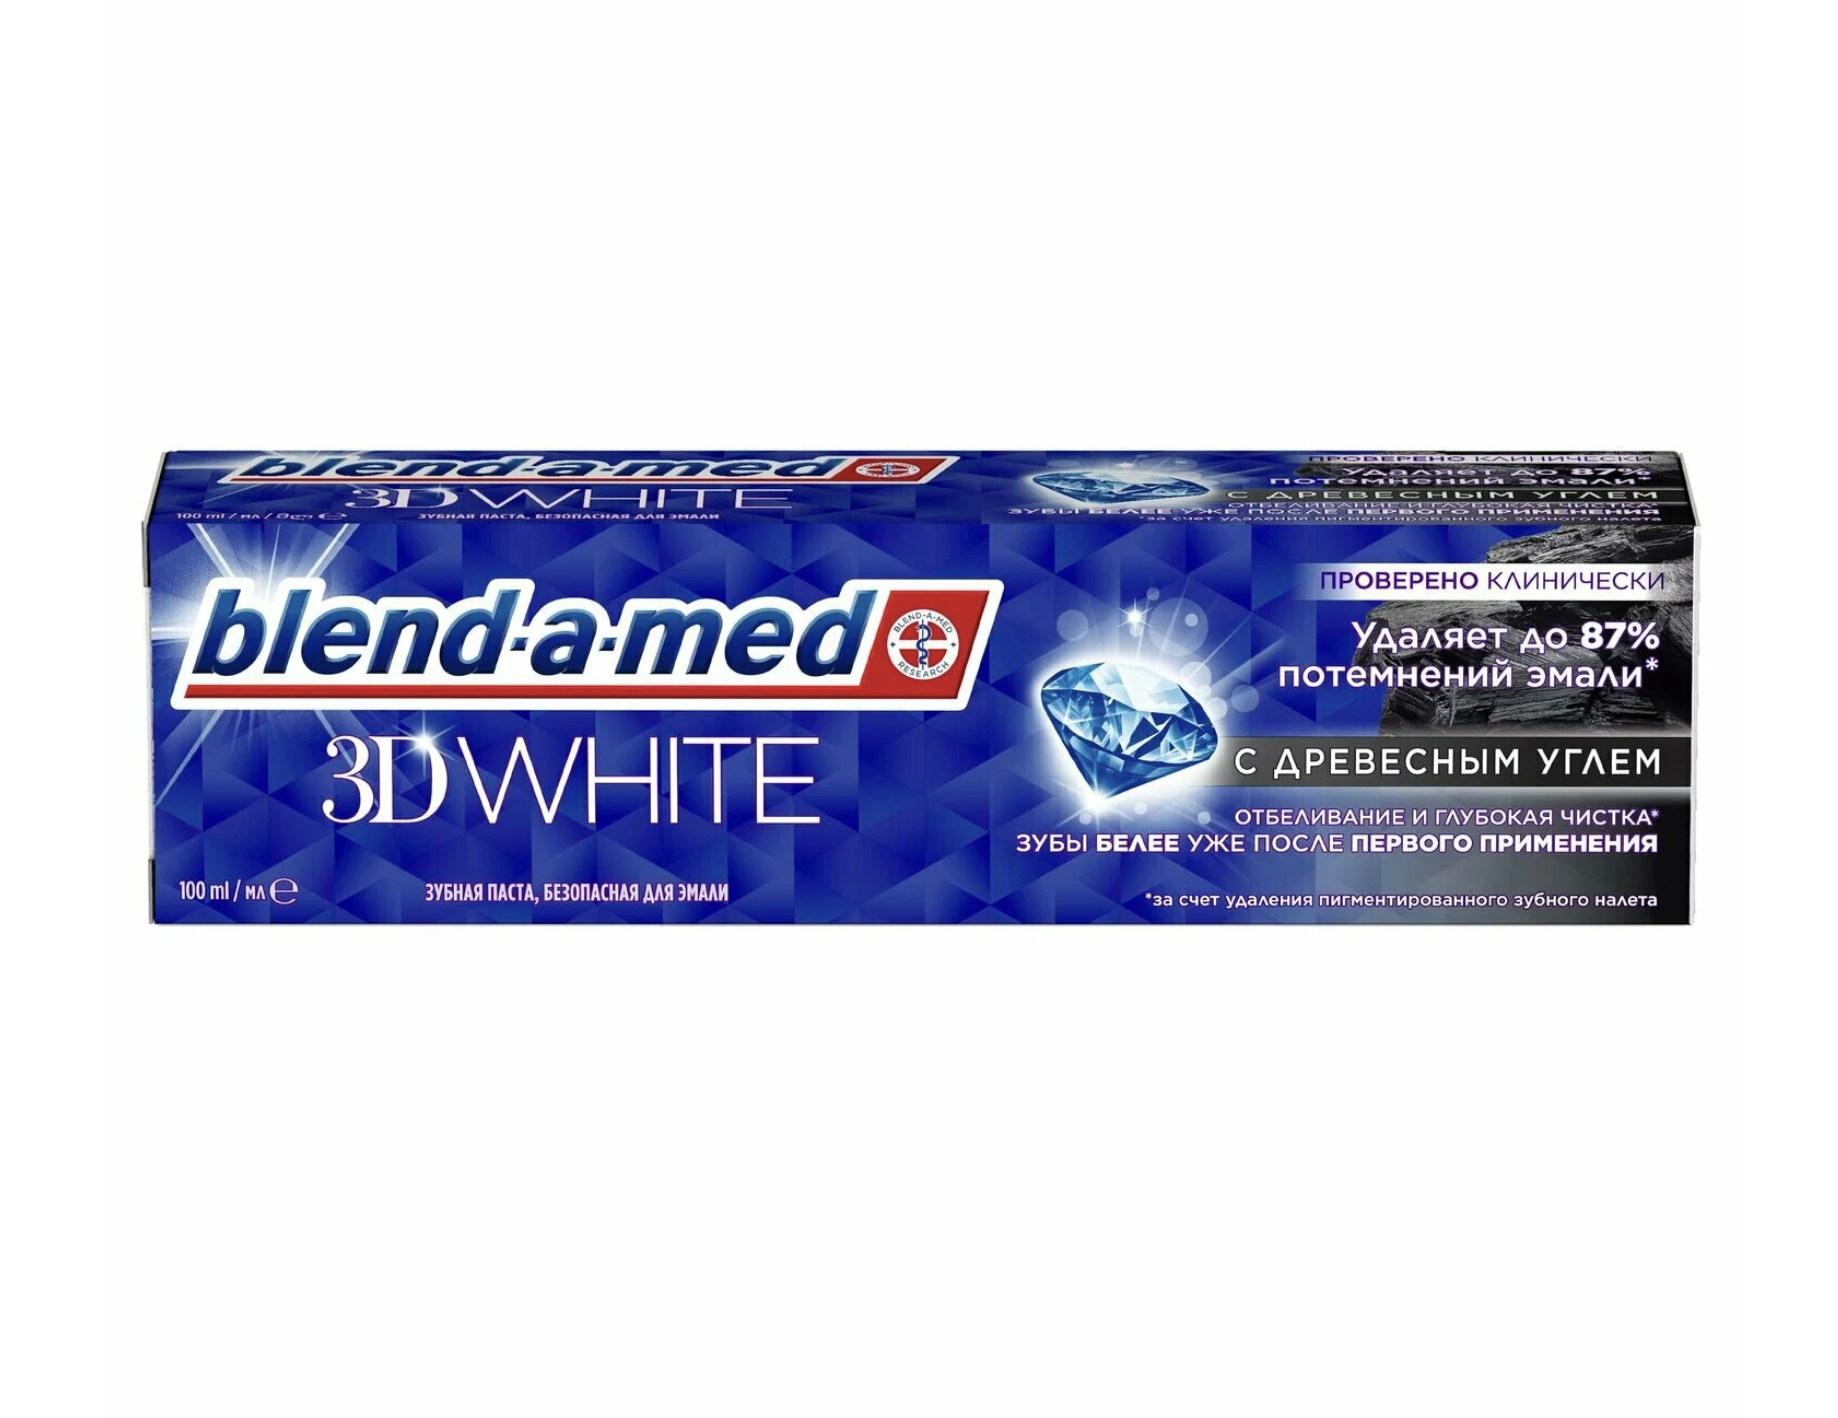  -- / Blend-a-med 3D White -      100 